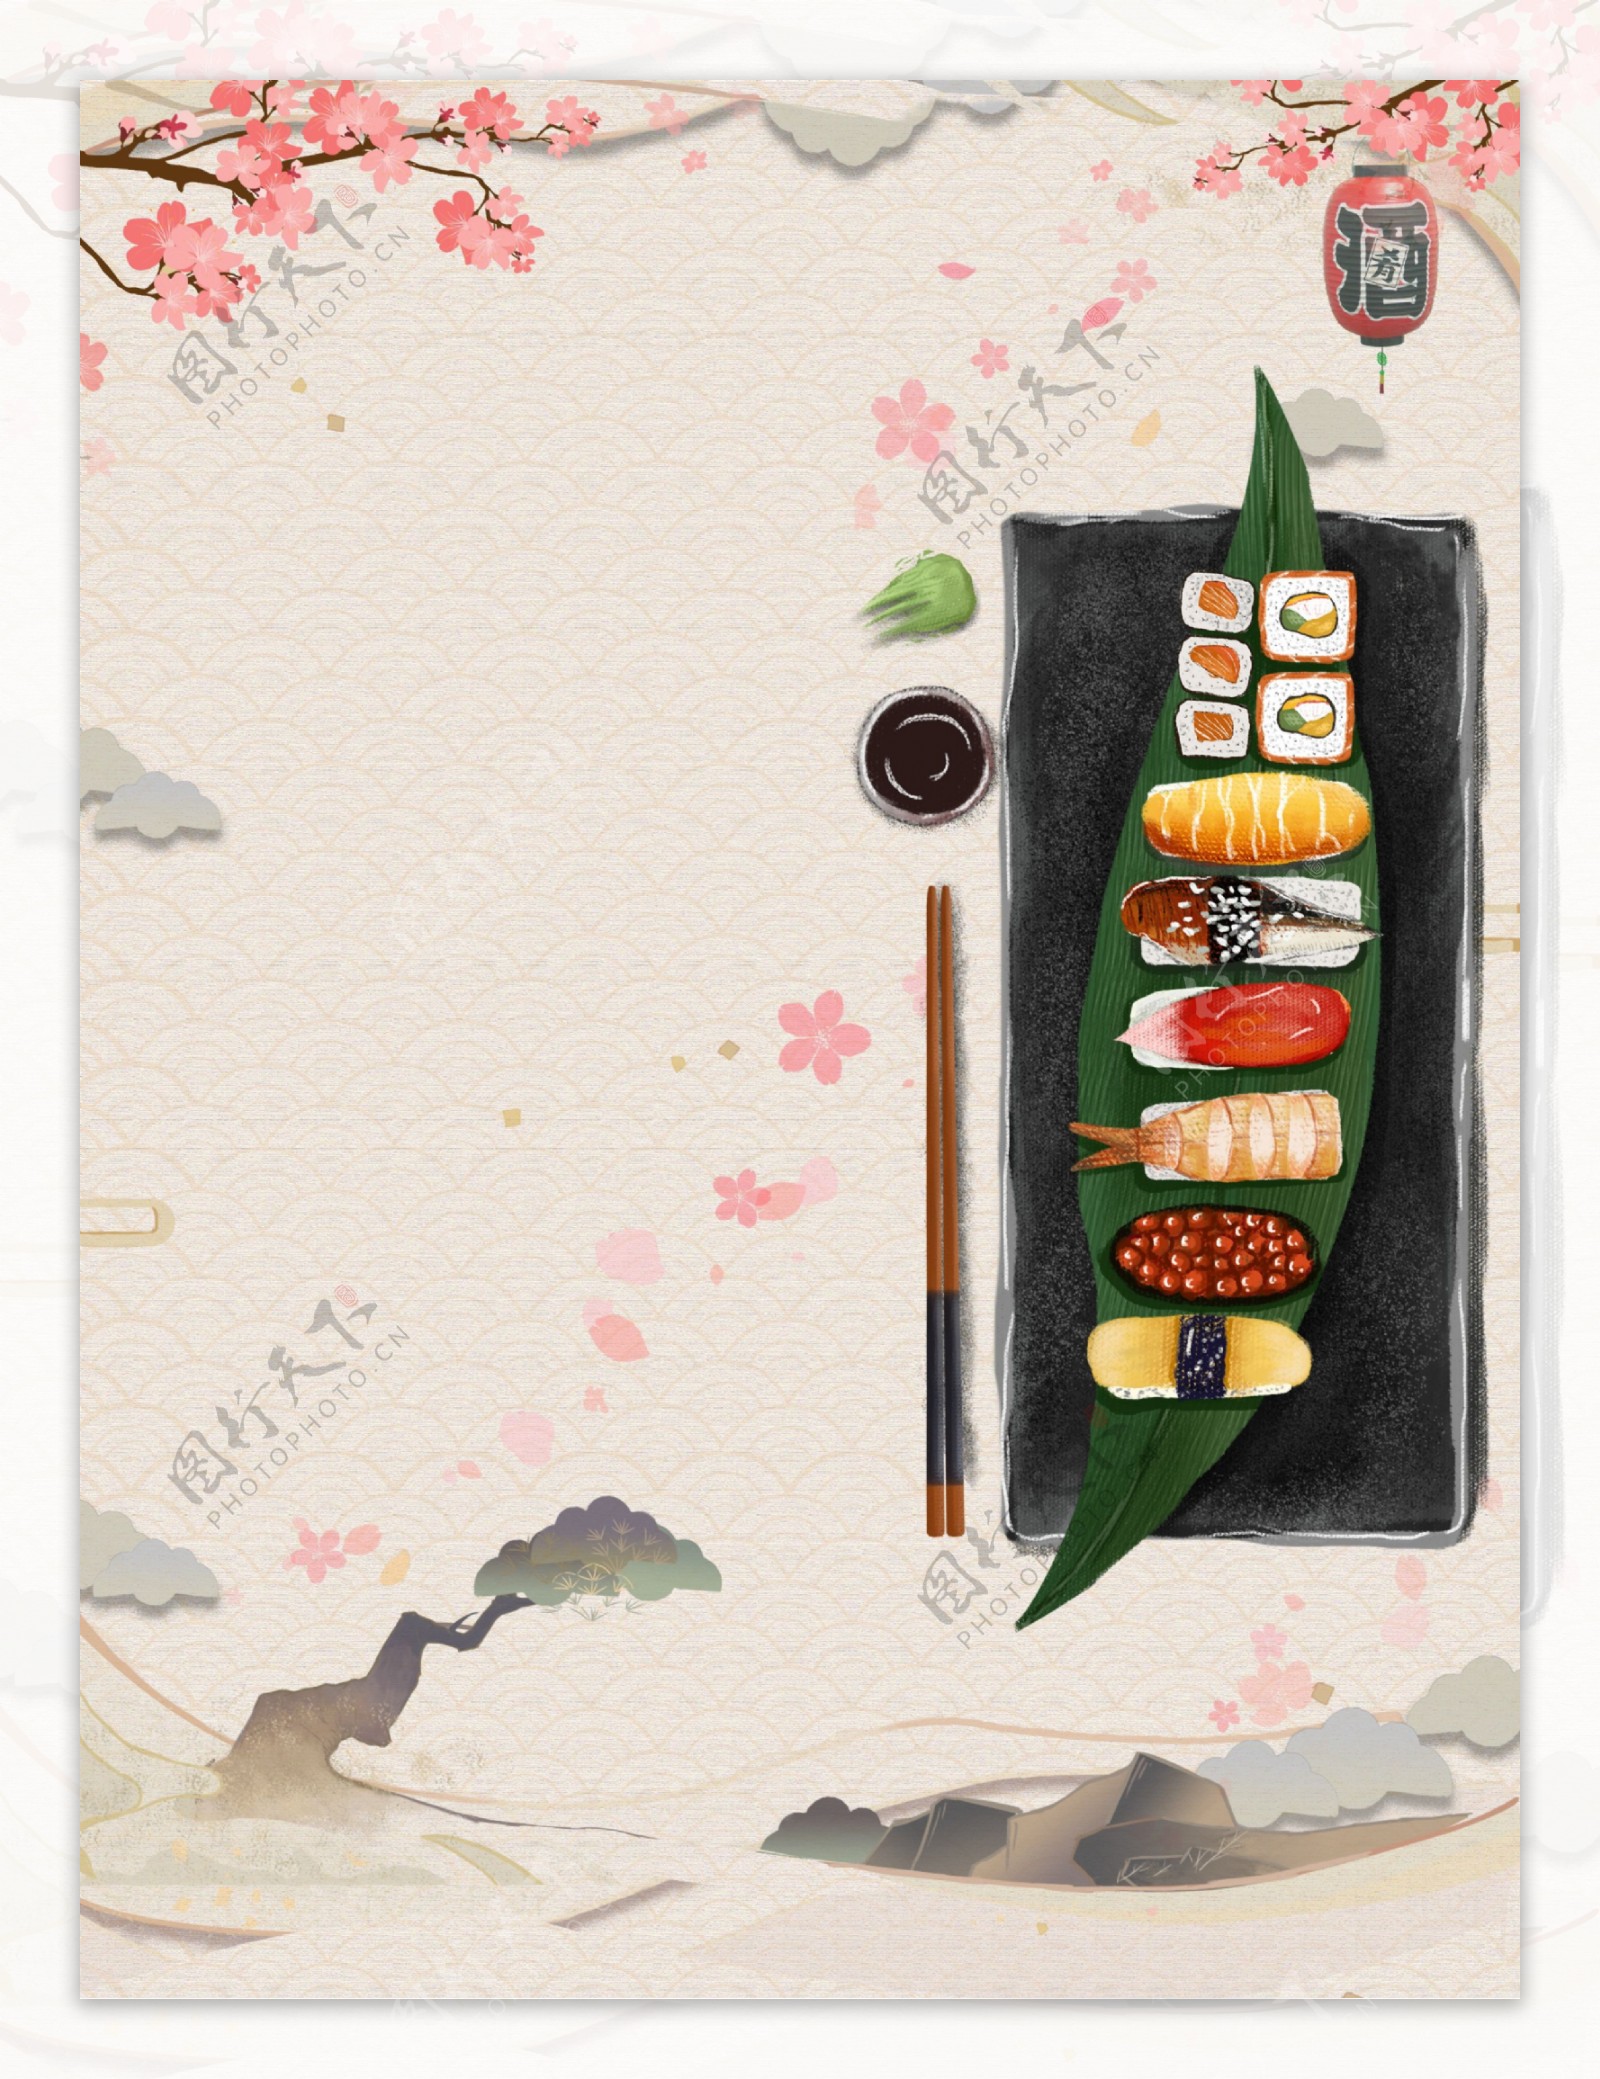 手绘日本料理寿司美食宣传背景